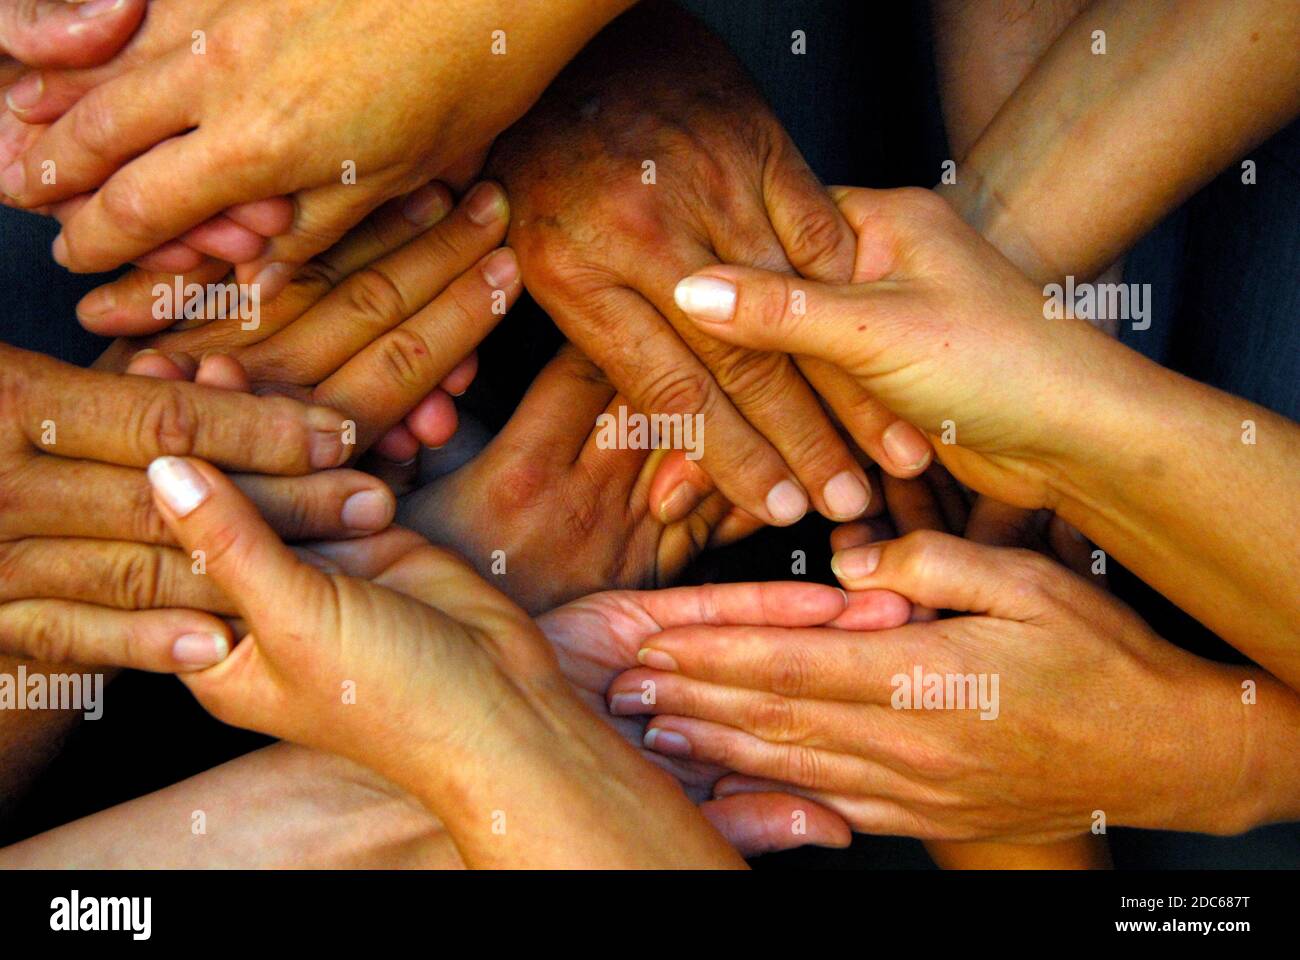 atteindre et toucher les mains, communication non verbale et symbole de solidarité Banque D'Images